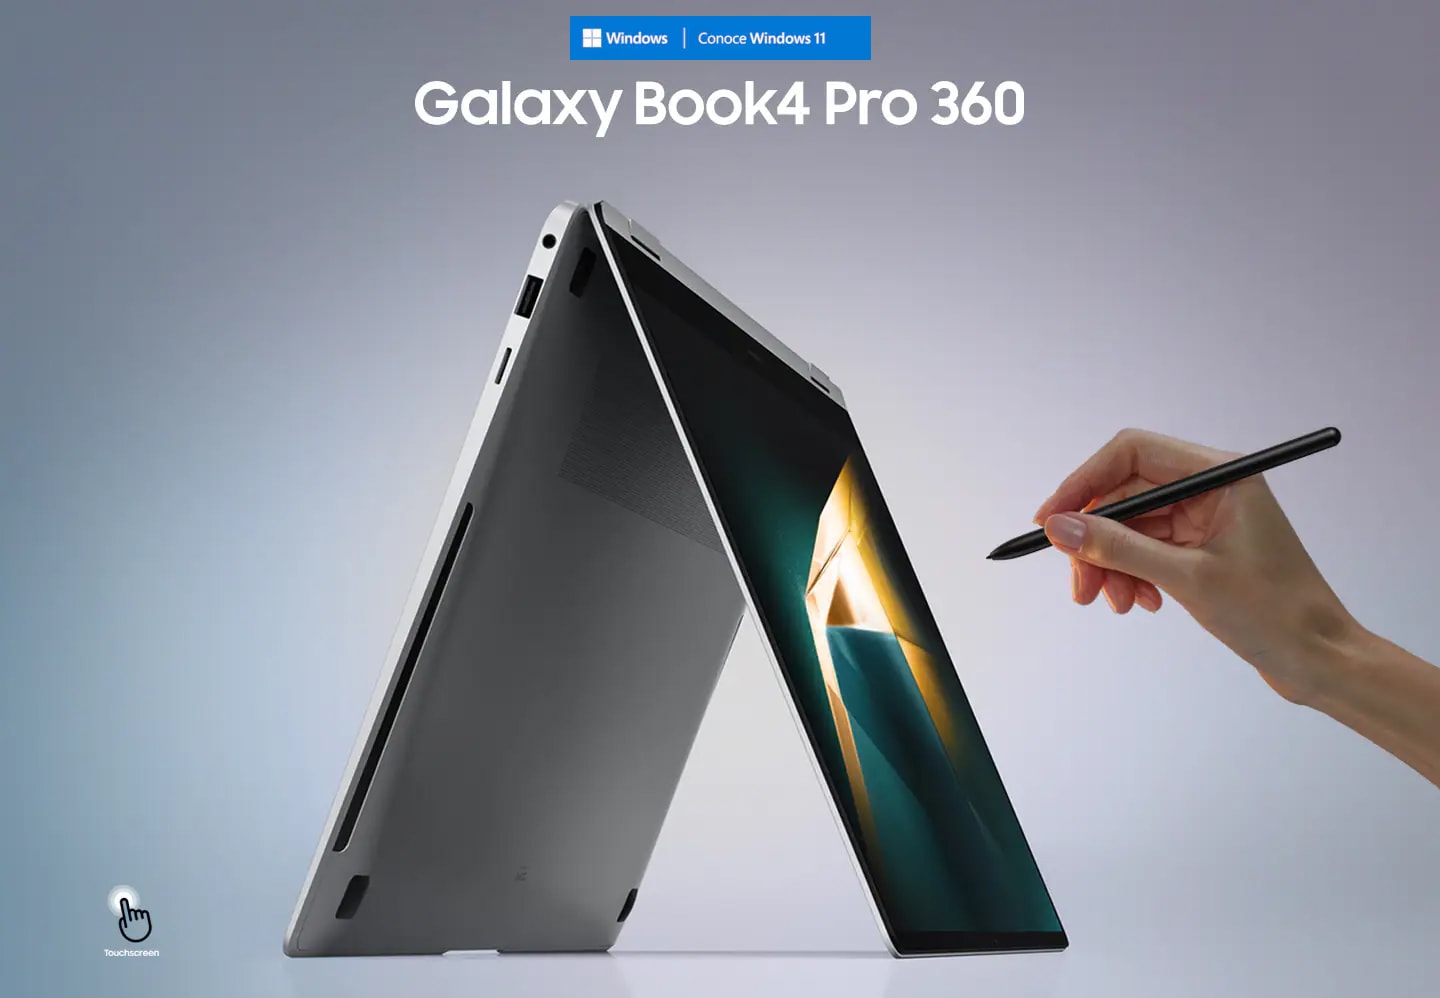 La Galaxy Book4 Pro 360 en Platinum Silver está plegada como una carpa, mirando hacia la derecha con un fondo de pantalla verde oscuro y amarillo, y una persona sosteniendo el S Pen apuntando a la pantalla. Se muestra el icono de pantalla táctil.